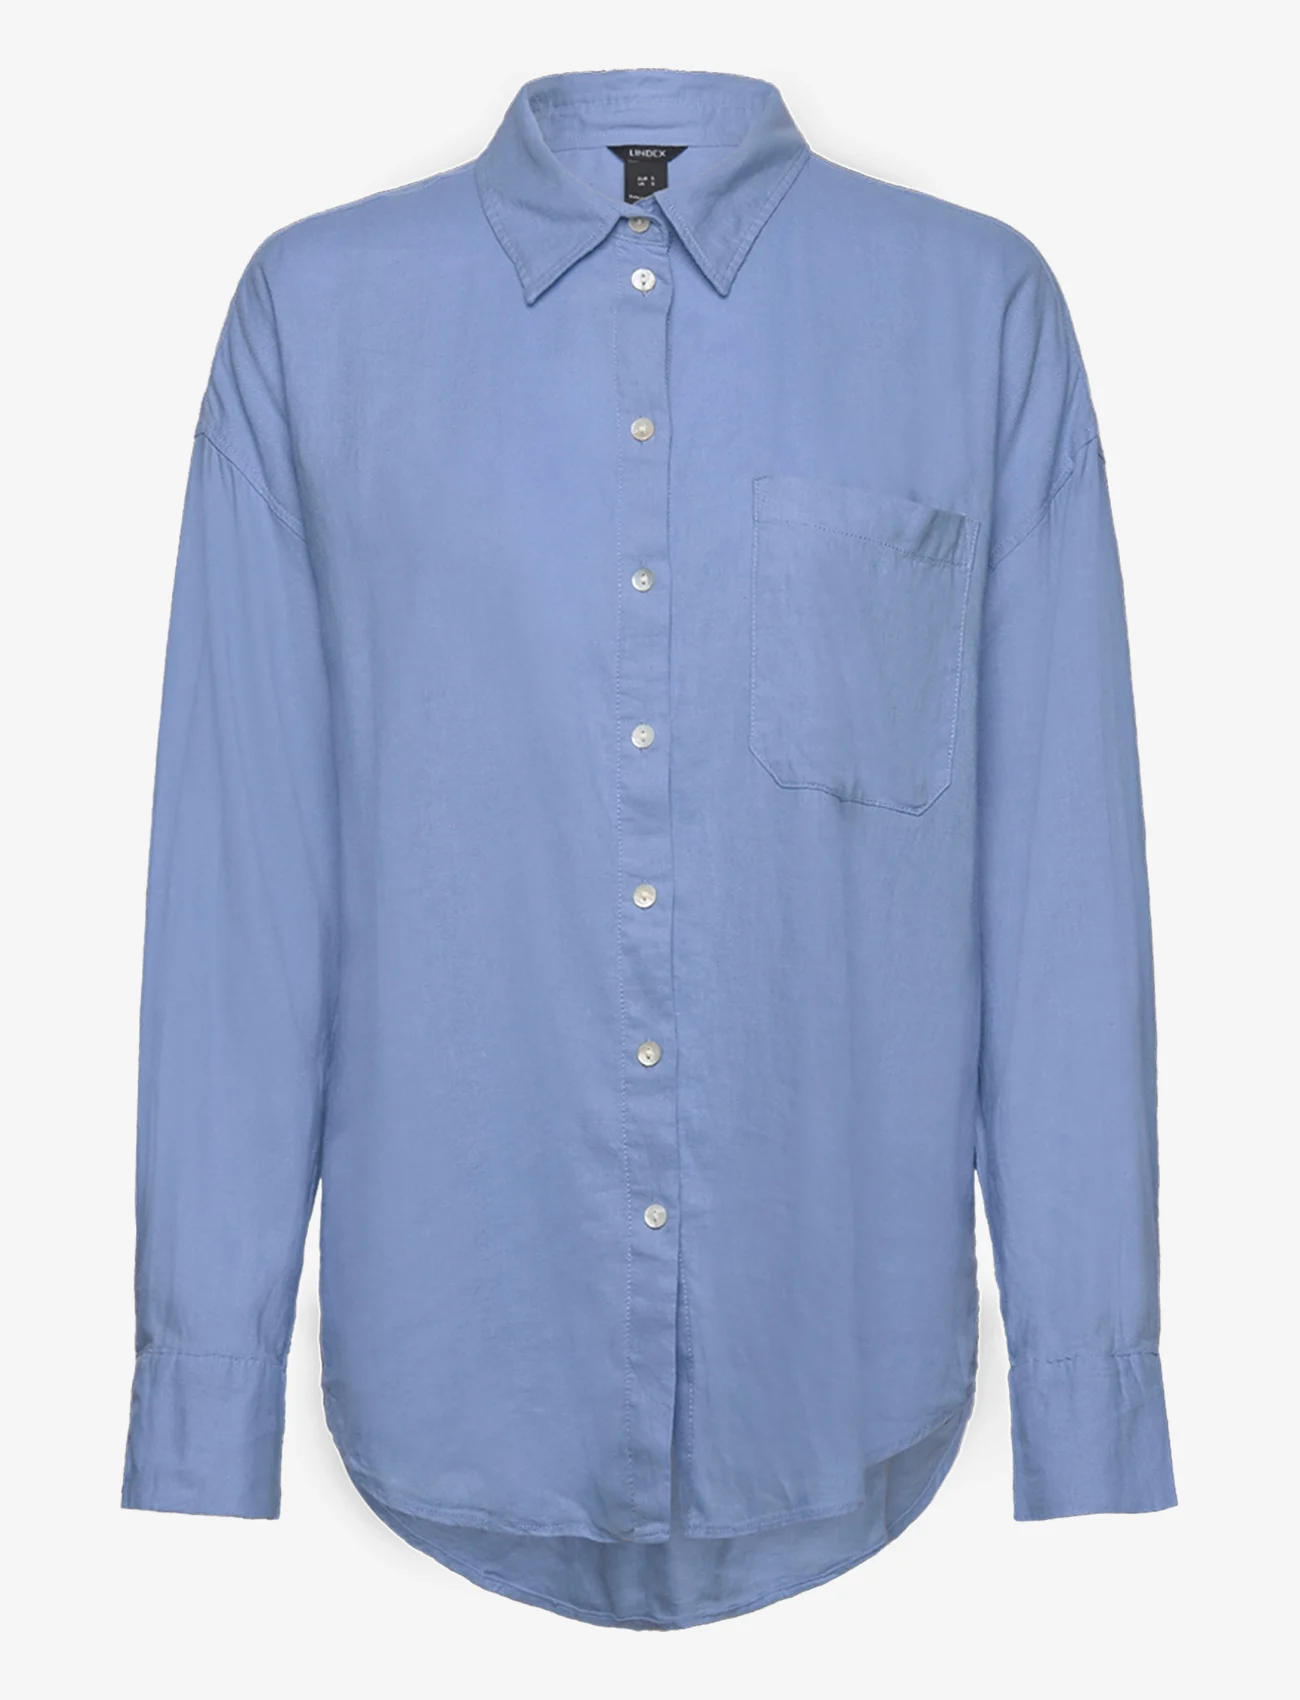 Lindex - Shirt Magda Linen blend - linen shirts - light blue - 0